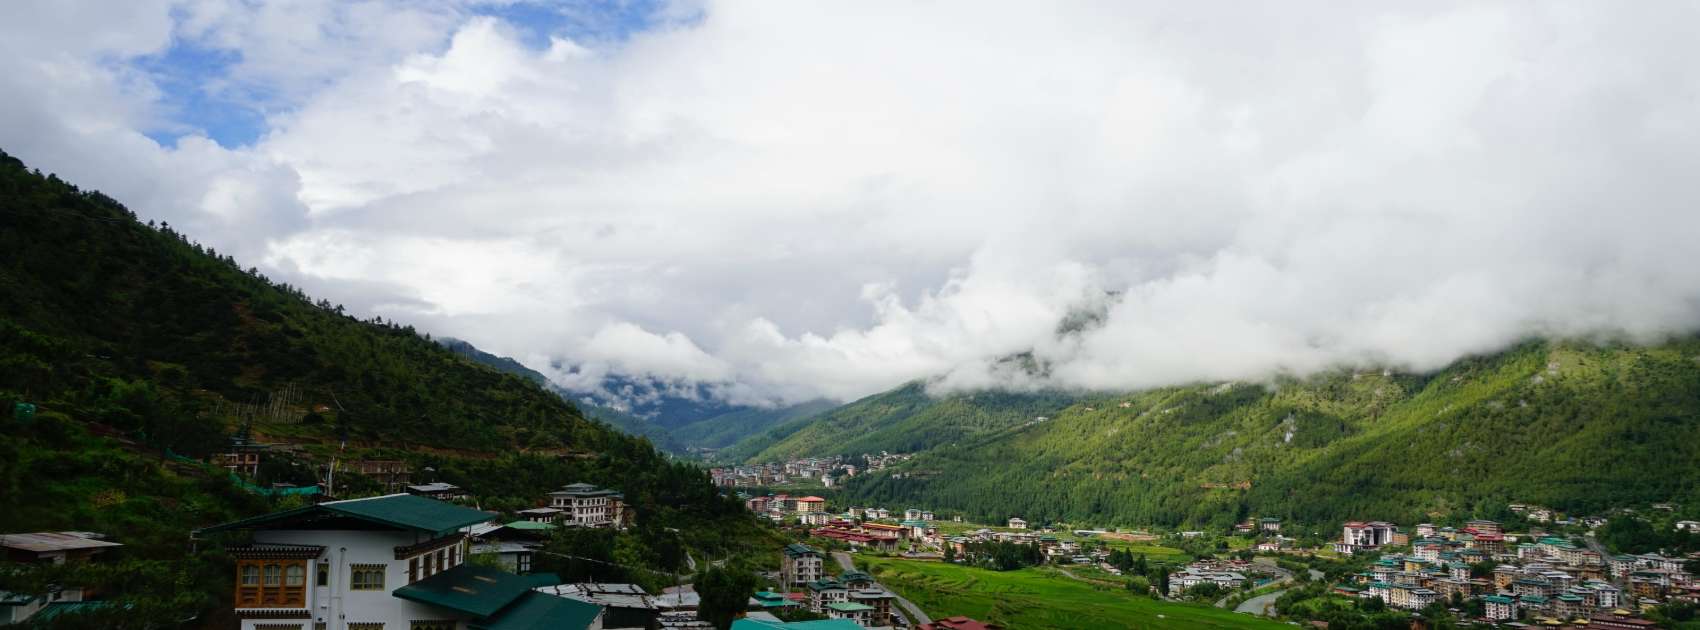 life scene in Bhutan